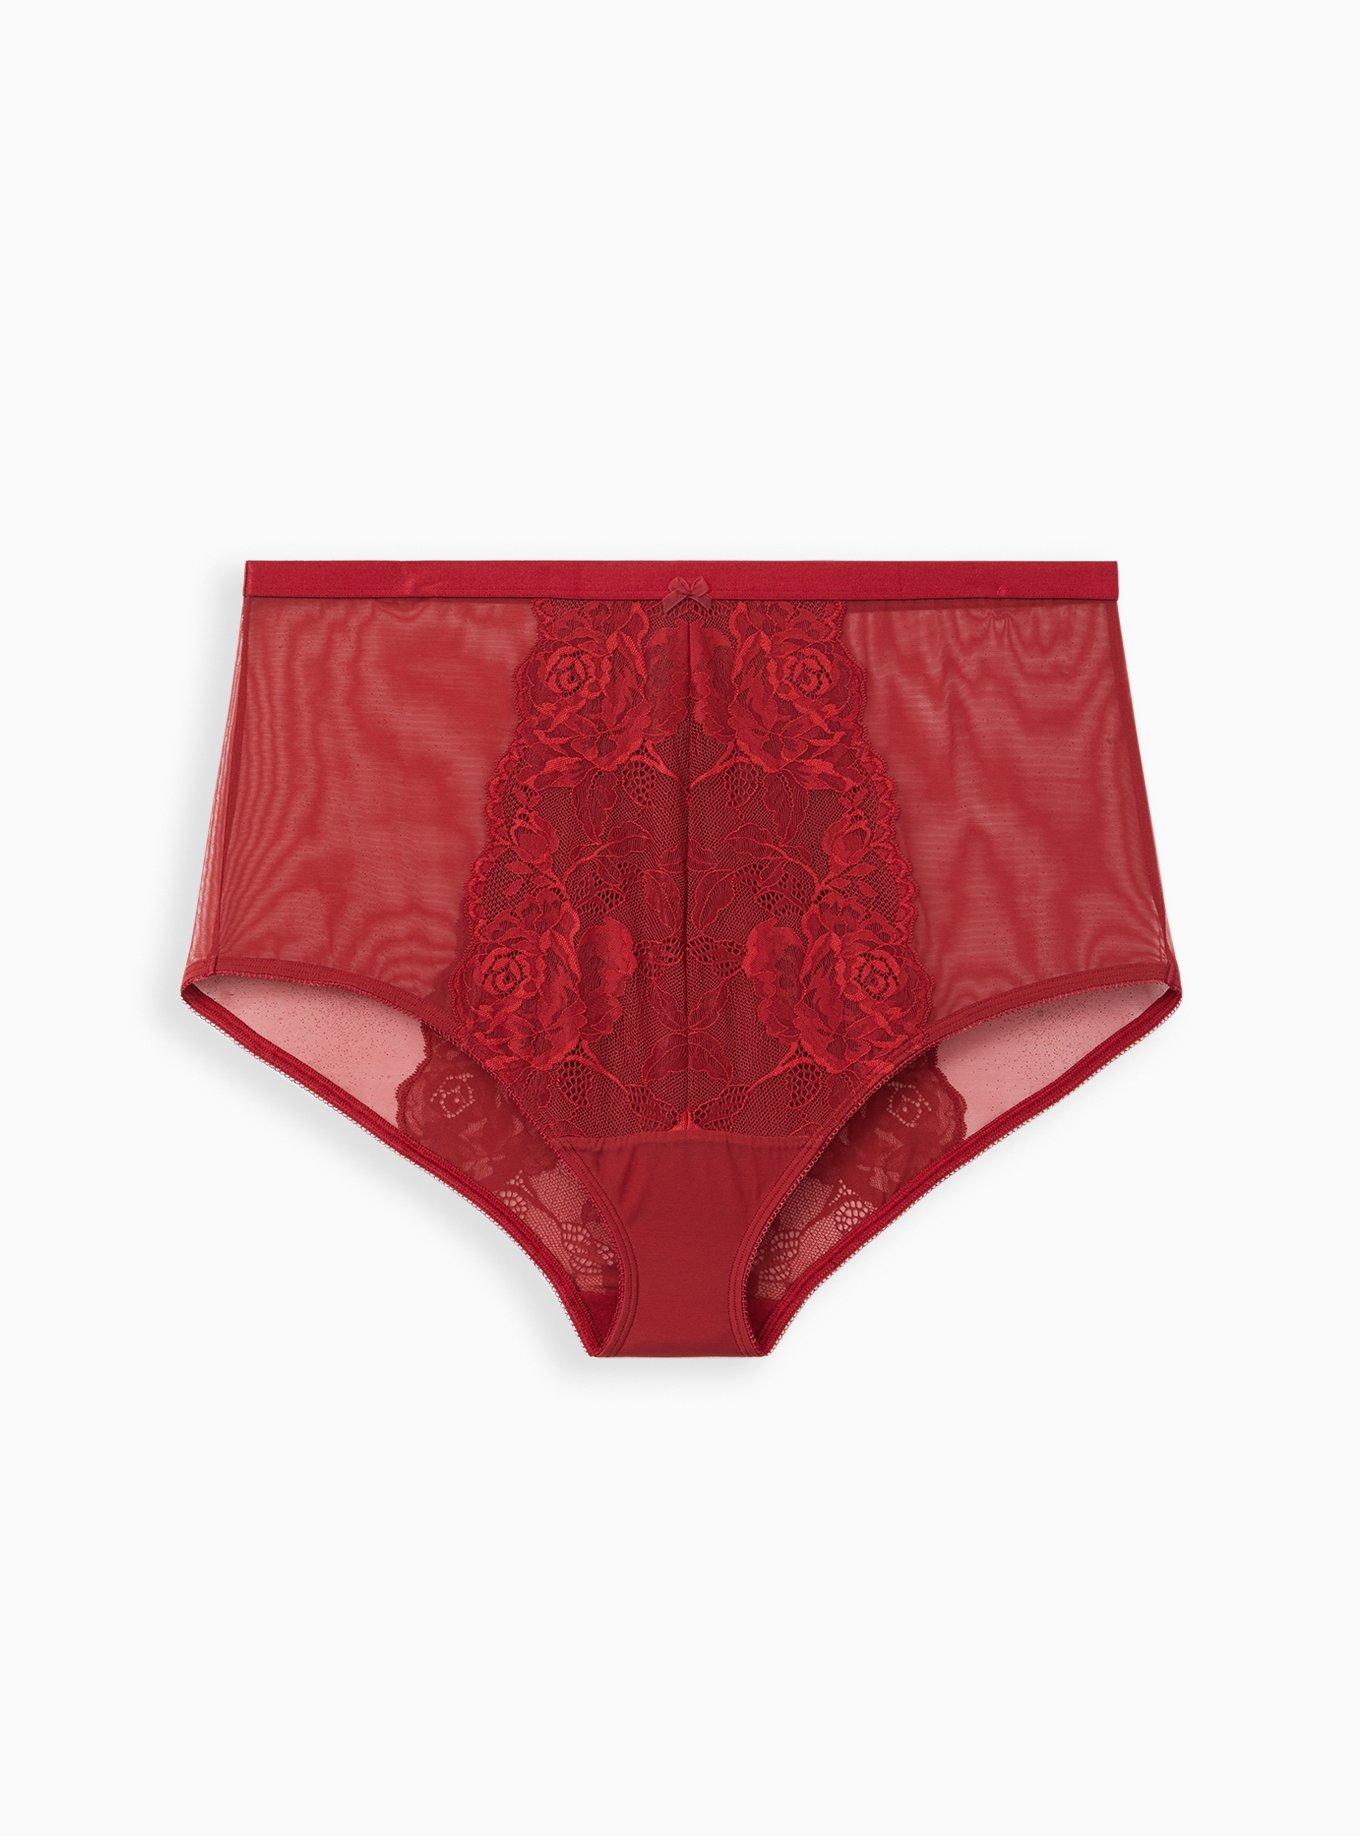 Buy Red Panties for Women by Urban Hug Online